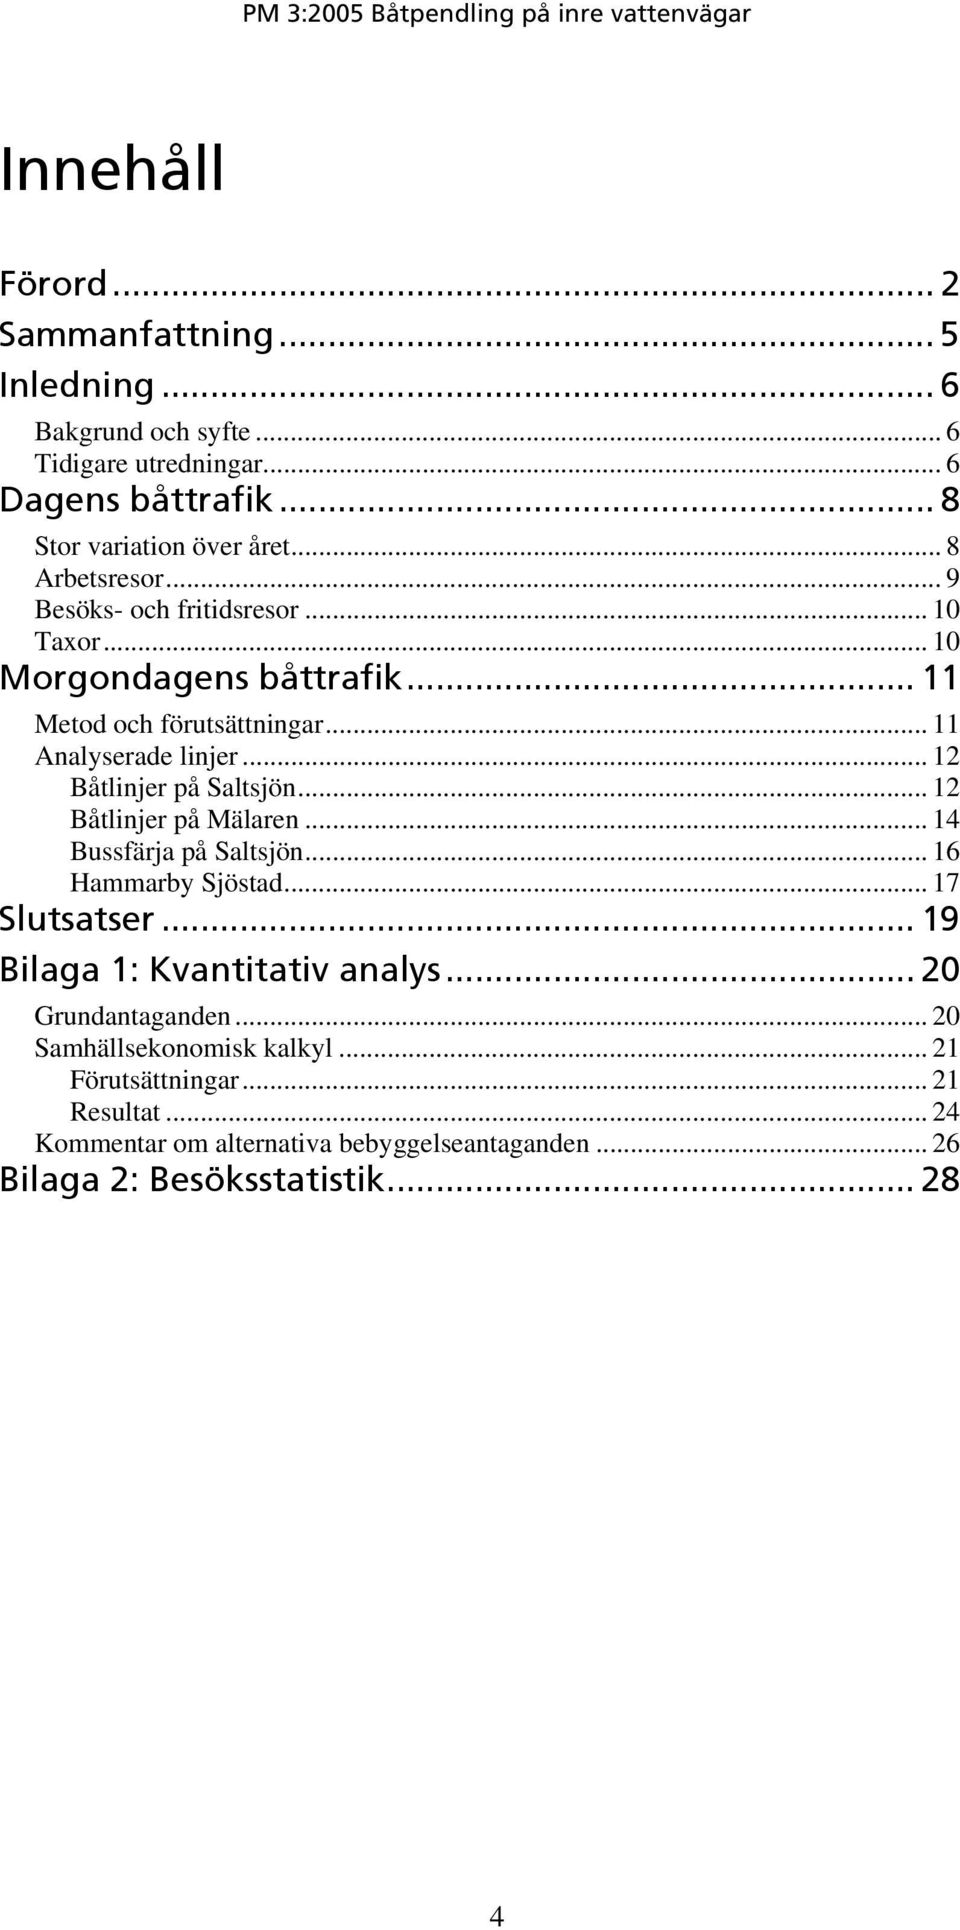 .. 12 Båtlinjer på Saltsjön... 12 Båtlinjer på Mälaren... 14 Bussfärja på Saltsjön... 16 Hammarby Sjöstad... 17 Slutsatser... 19 Bilaga 1: Kvantitativ analys.